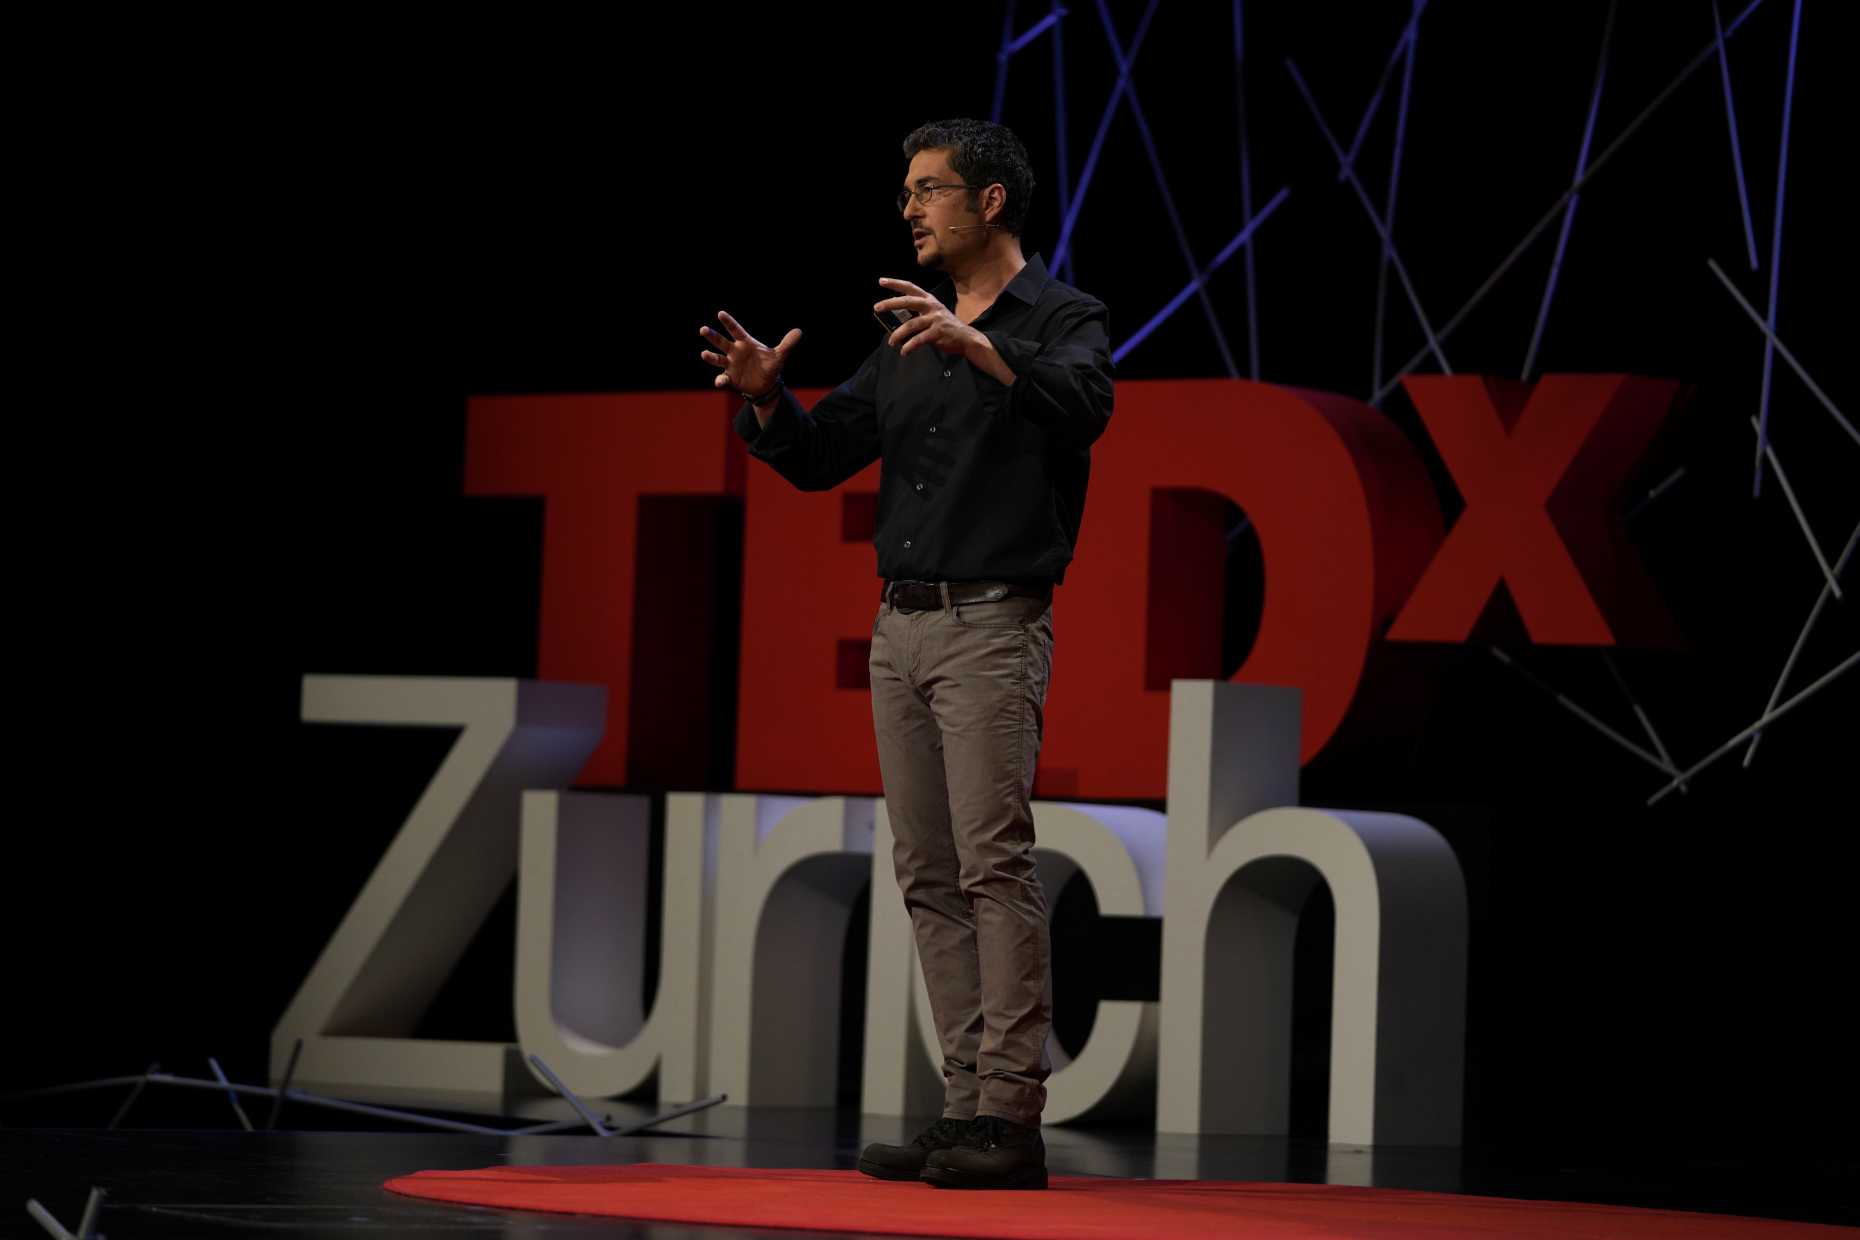 Claude at TEDxZurich